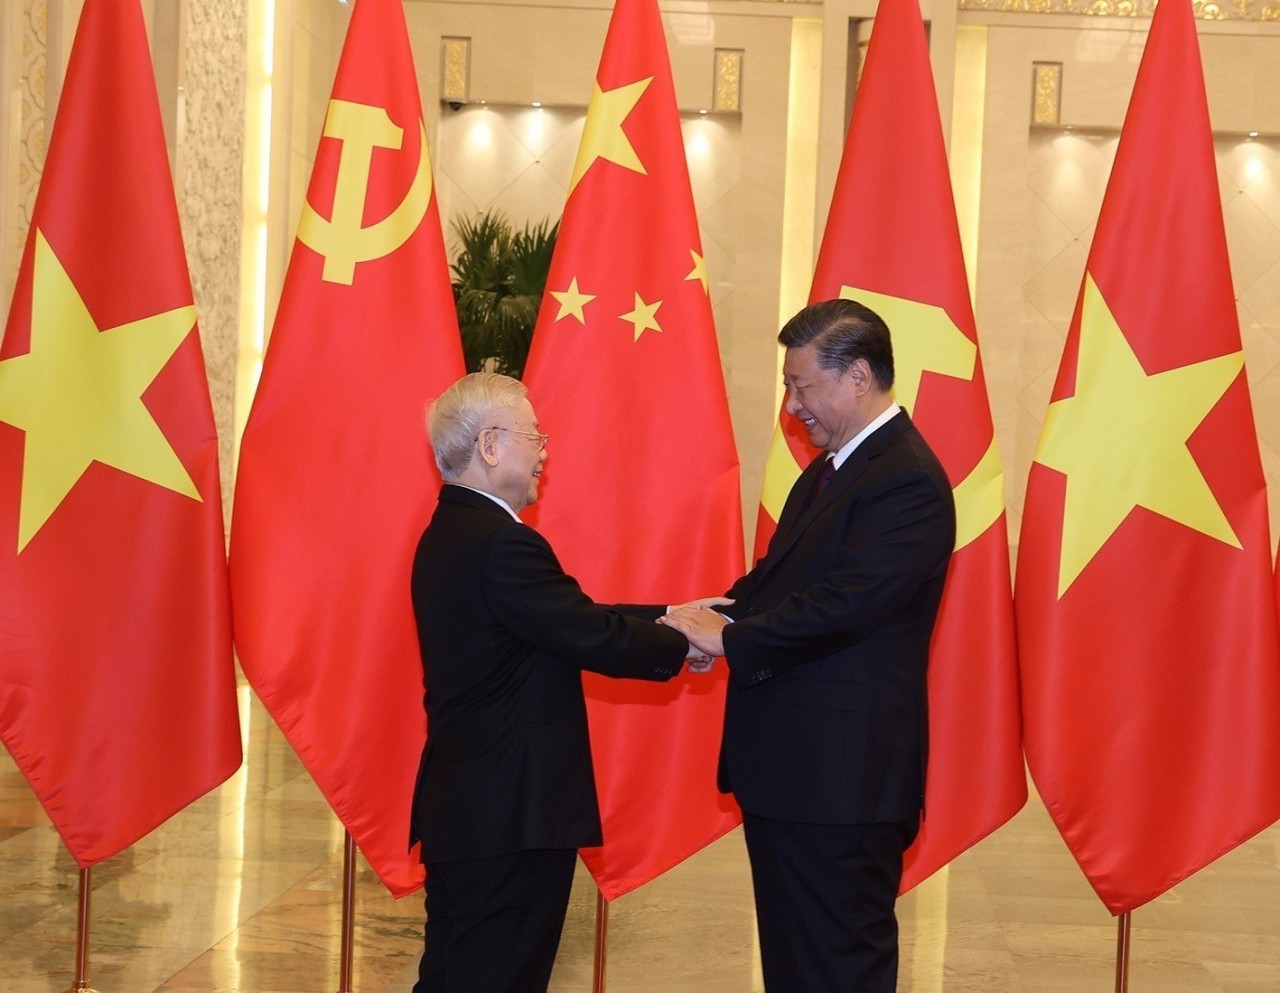 Tổng Bí thư Nguyễn Phú Trọng dẫn đầu Đoàn đại biểu cấp cao Đảng và Nhà nước thăm chính thức nước Cộng hòa Nhân dân Trung Hoa theo lời mời của Tổng Bí thư, Chủ tịch nước Tập Cận Bình 